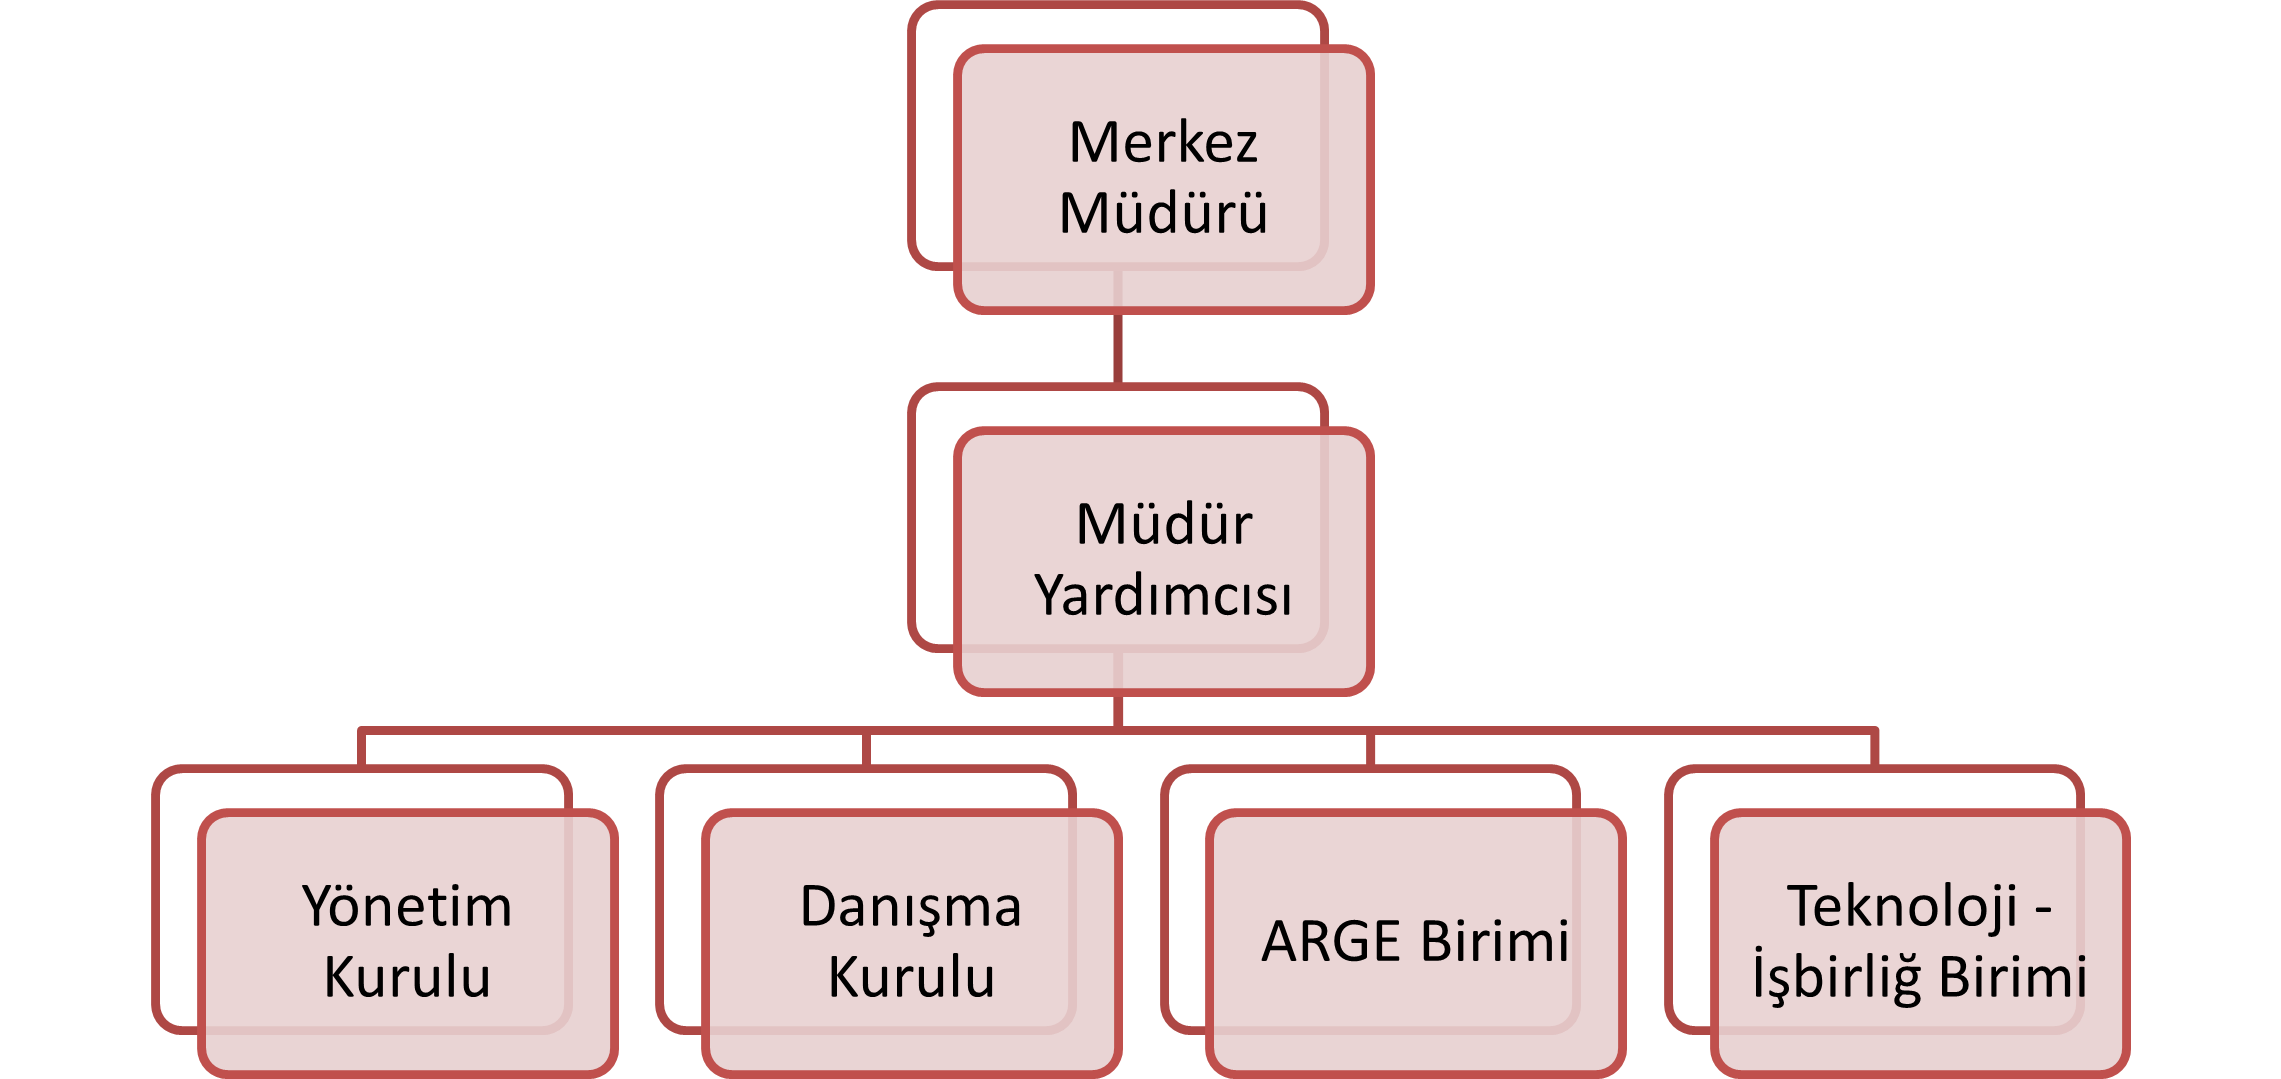 organizasyon şeması-1